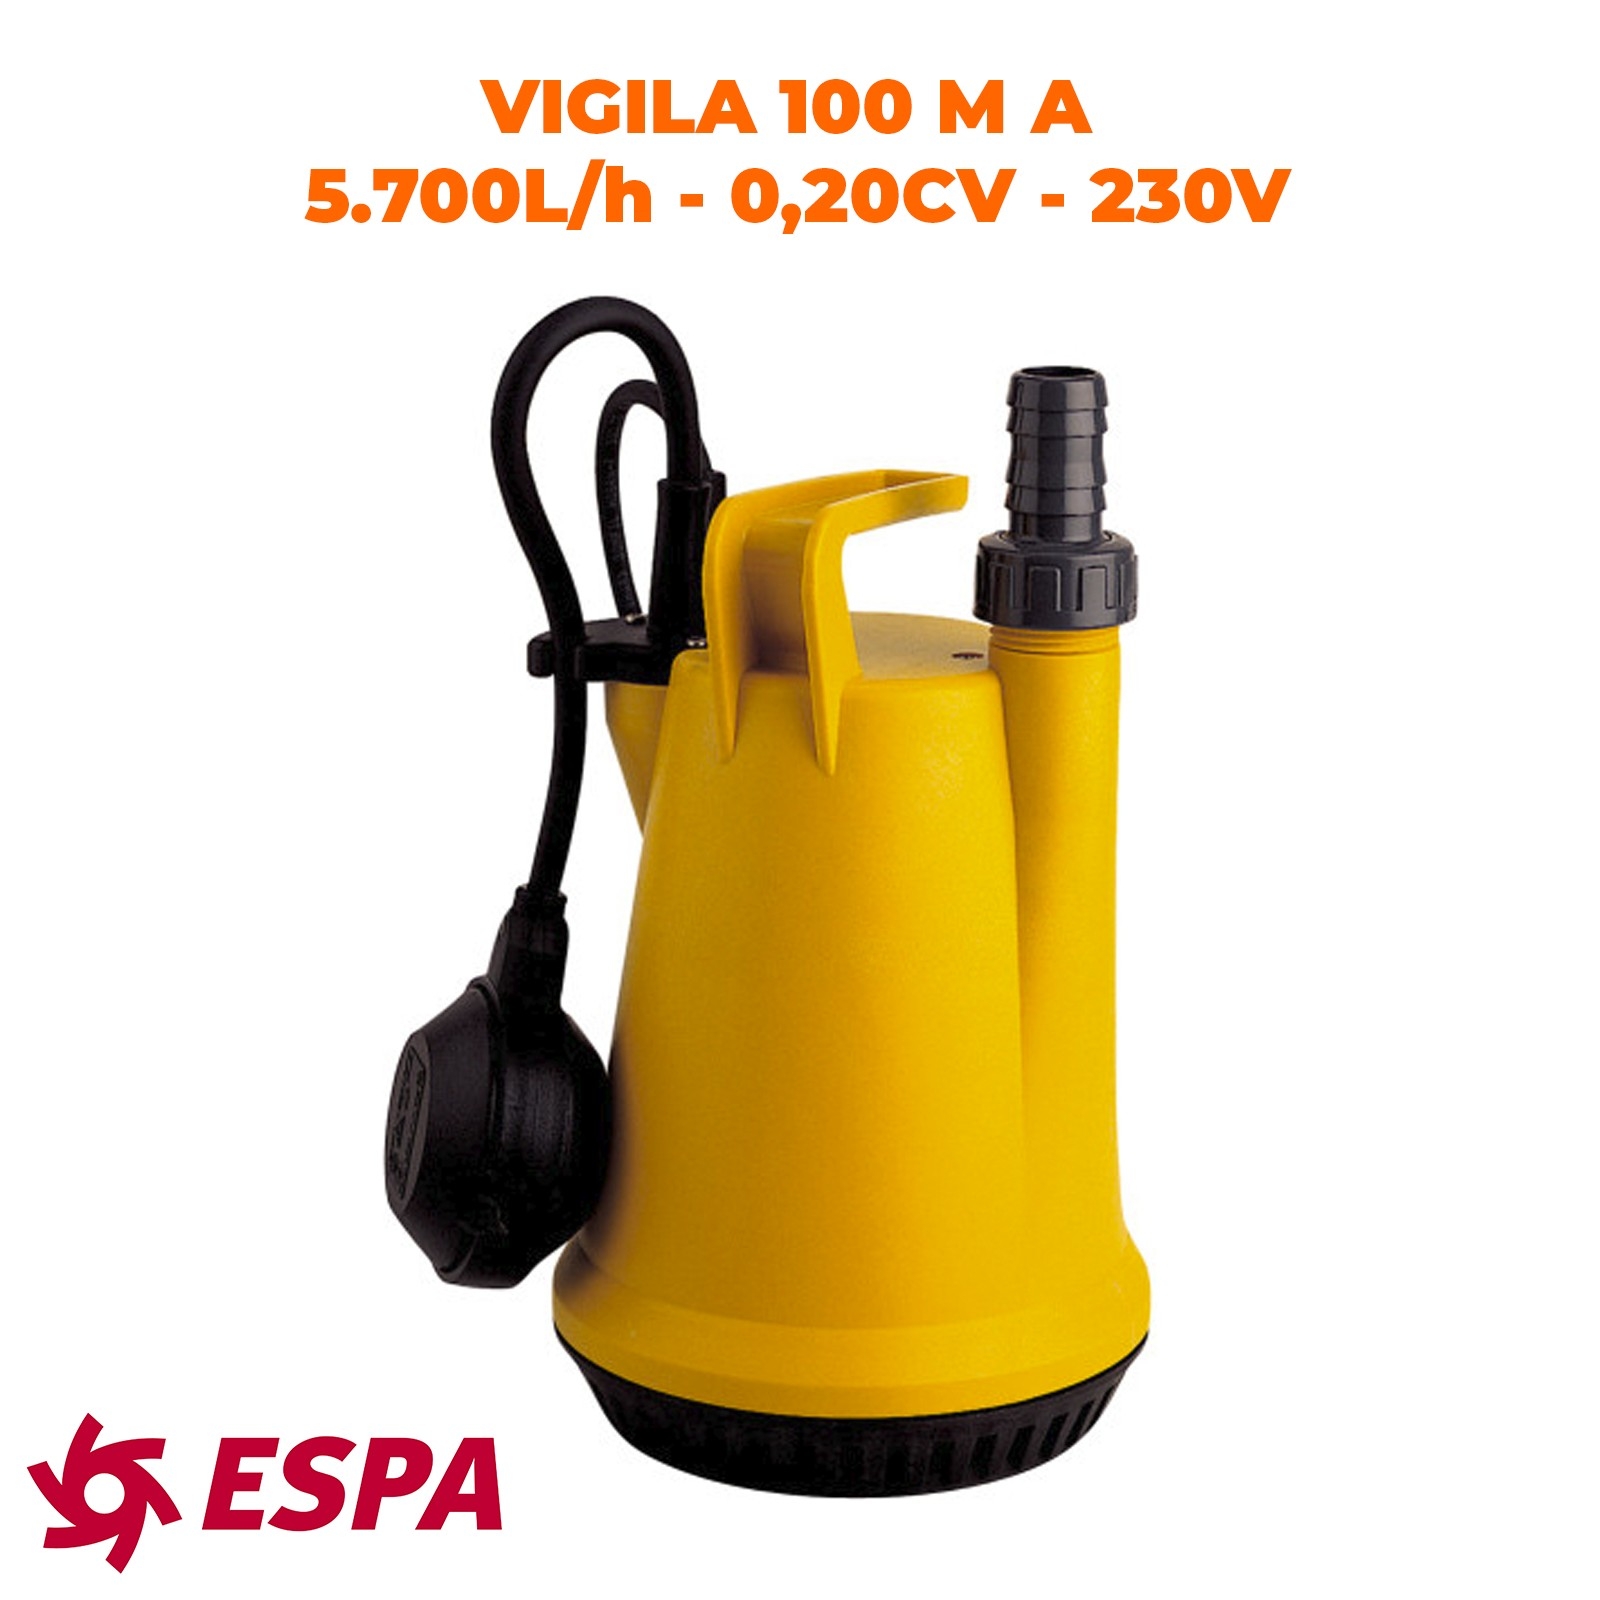 ESPA Pompe portable submersible pour les eaux usées VIGILA 100 M A - 5.700L/h - 5m max. - 230V